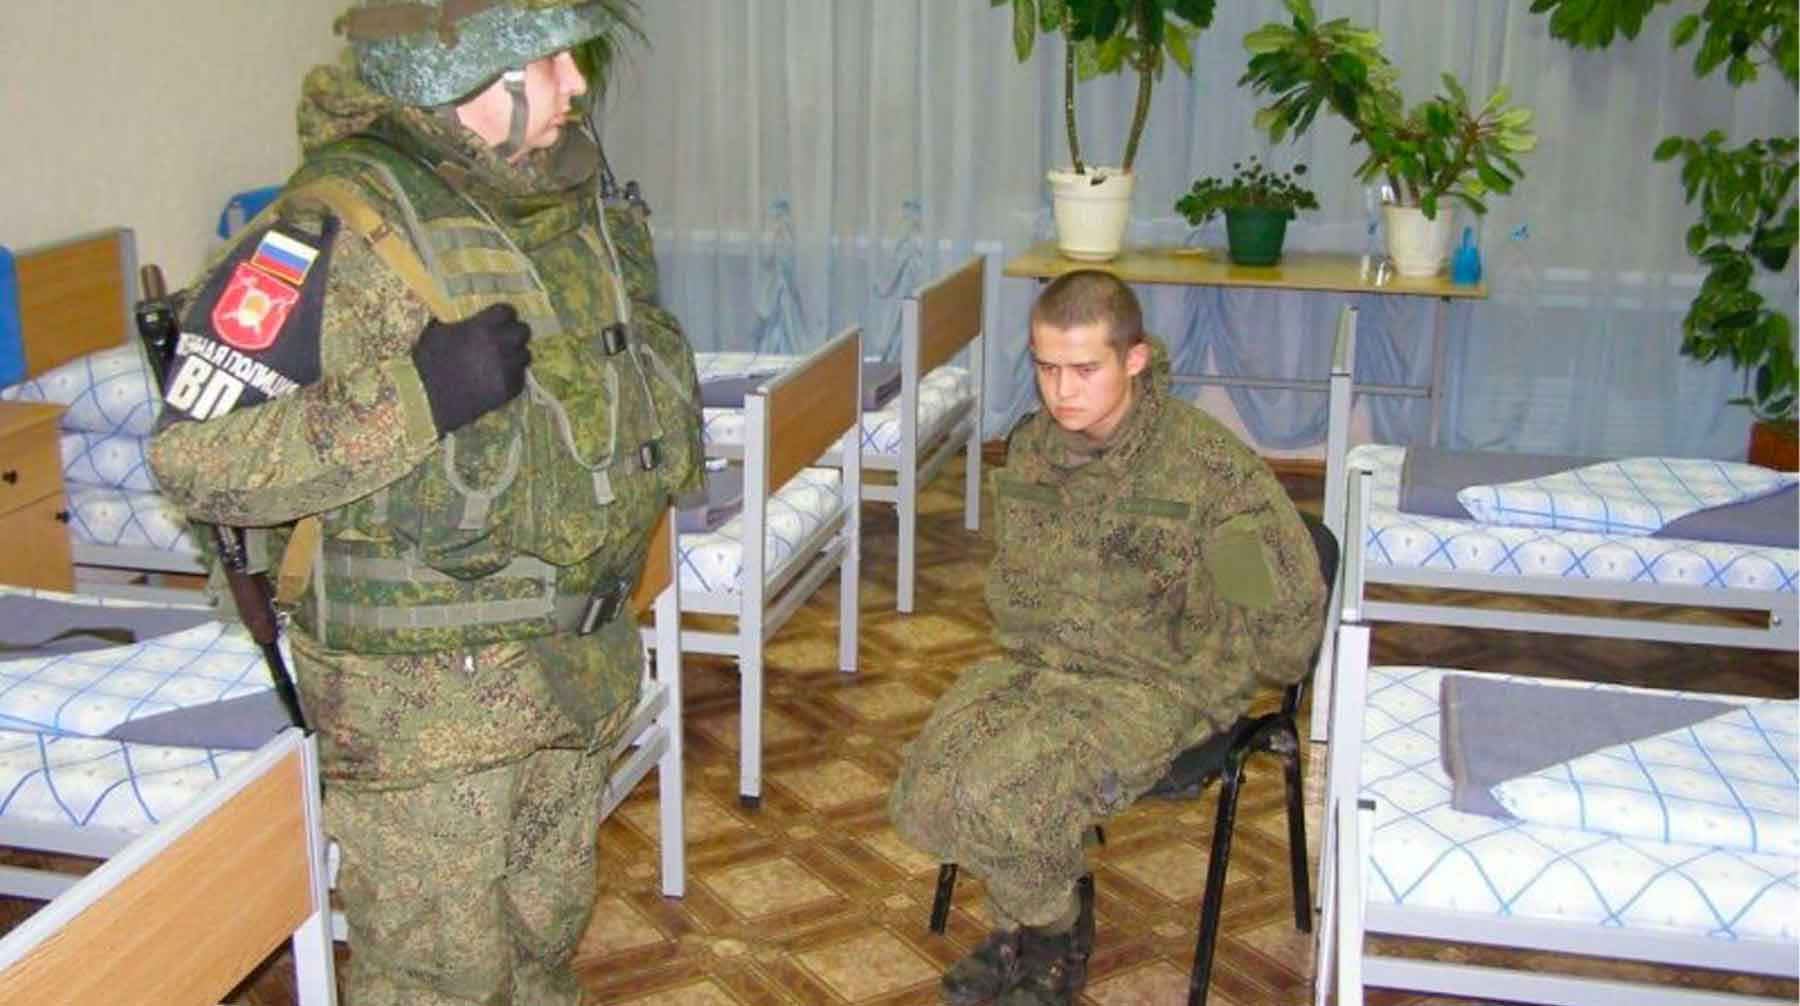 Рамиль Шамсутдинов убил своих сослуживцев Рамил Шамсутдинов (справа)